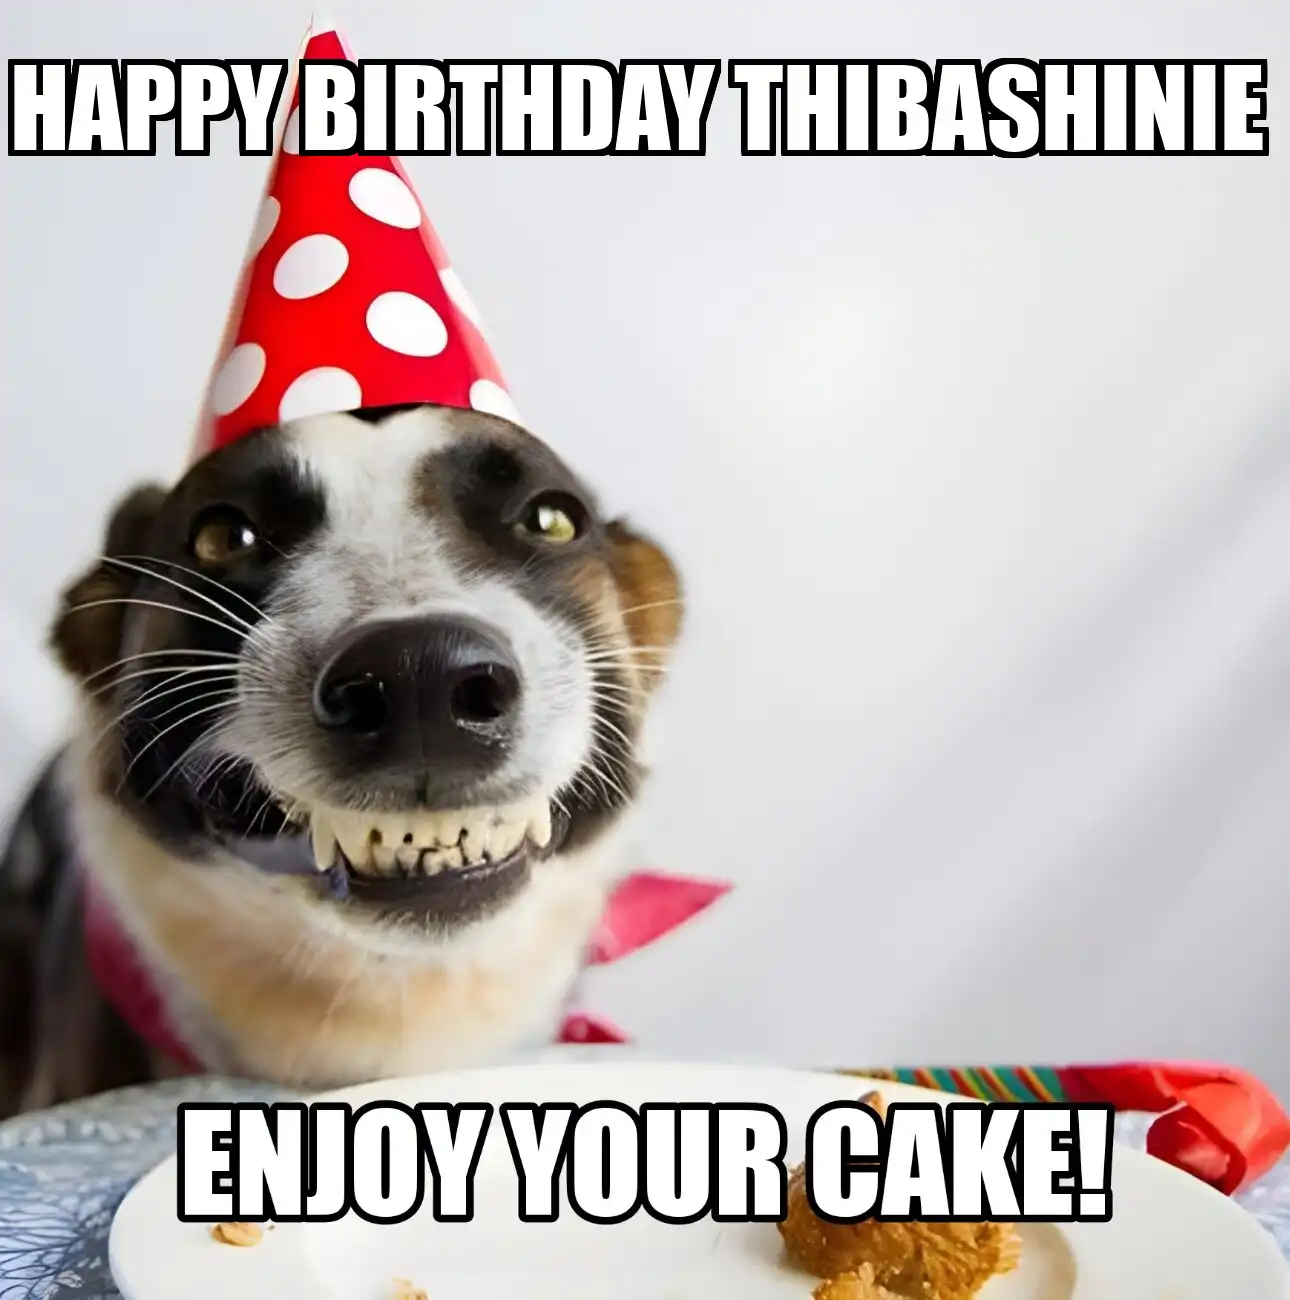 Happy Birthday Thibashinie Enjoy Your Cake Dog Meme